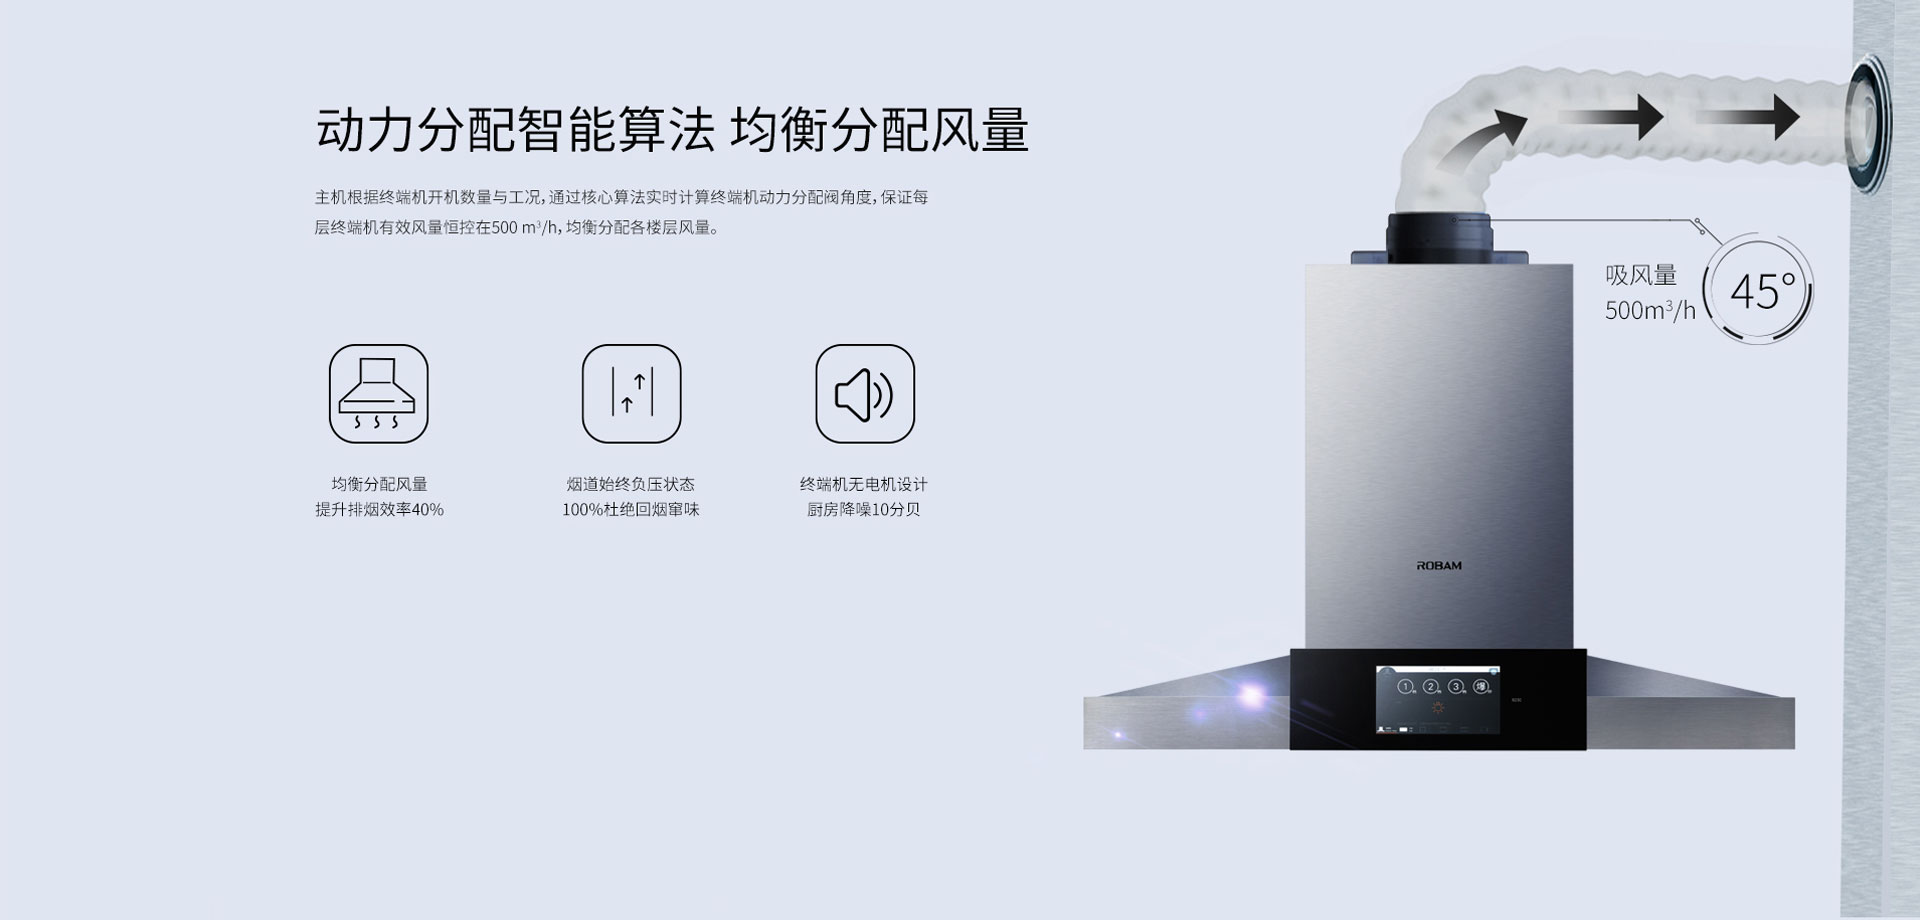 老板(Robam) 智能平板大吸力油烟机8700价格,图片,参数-家用电器厨房电器灶具-北京房天下家居装修网